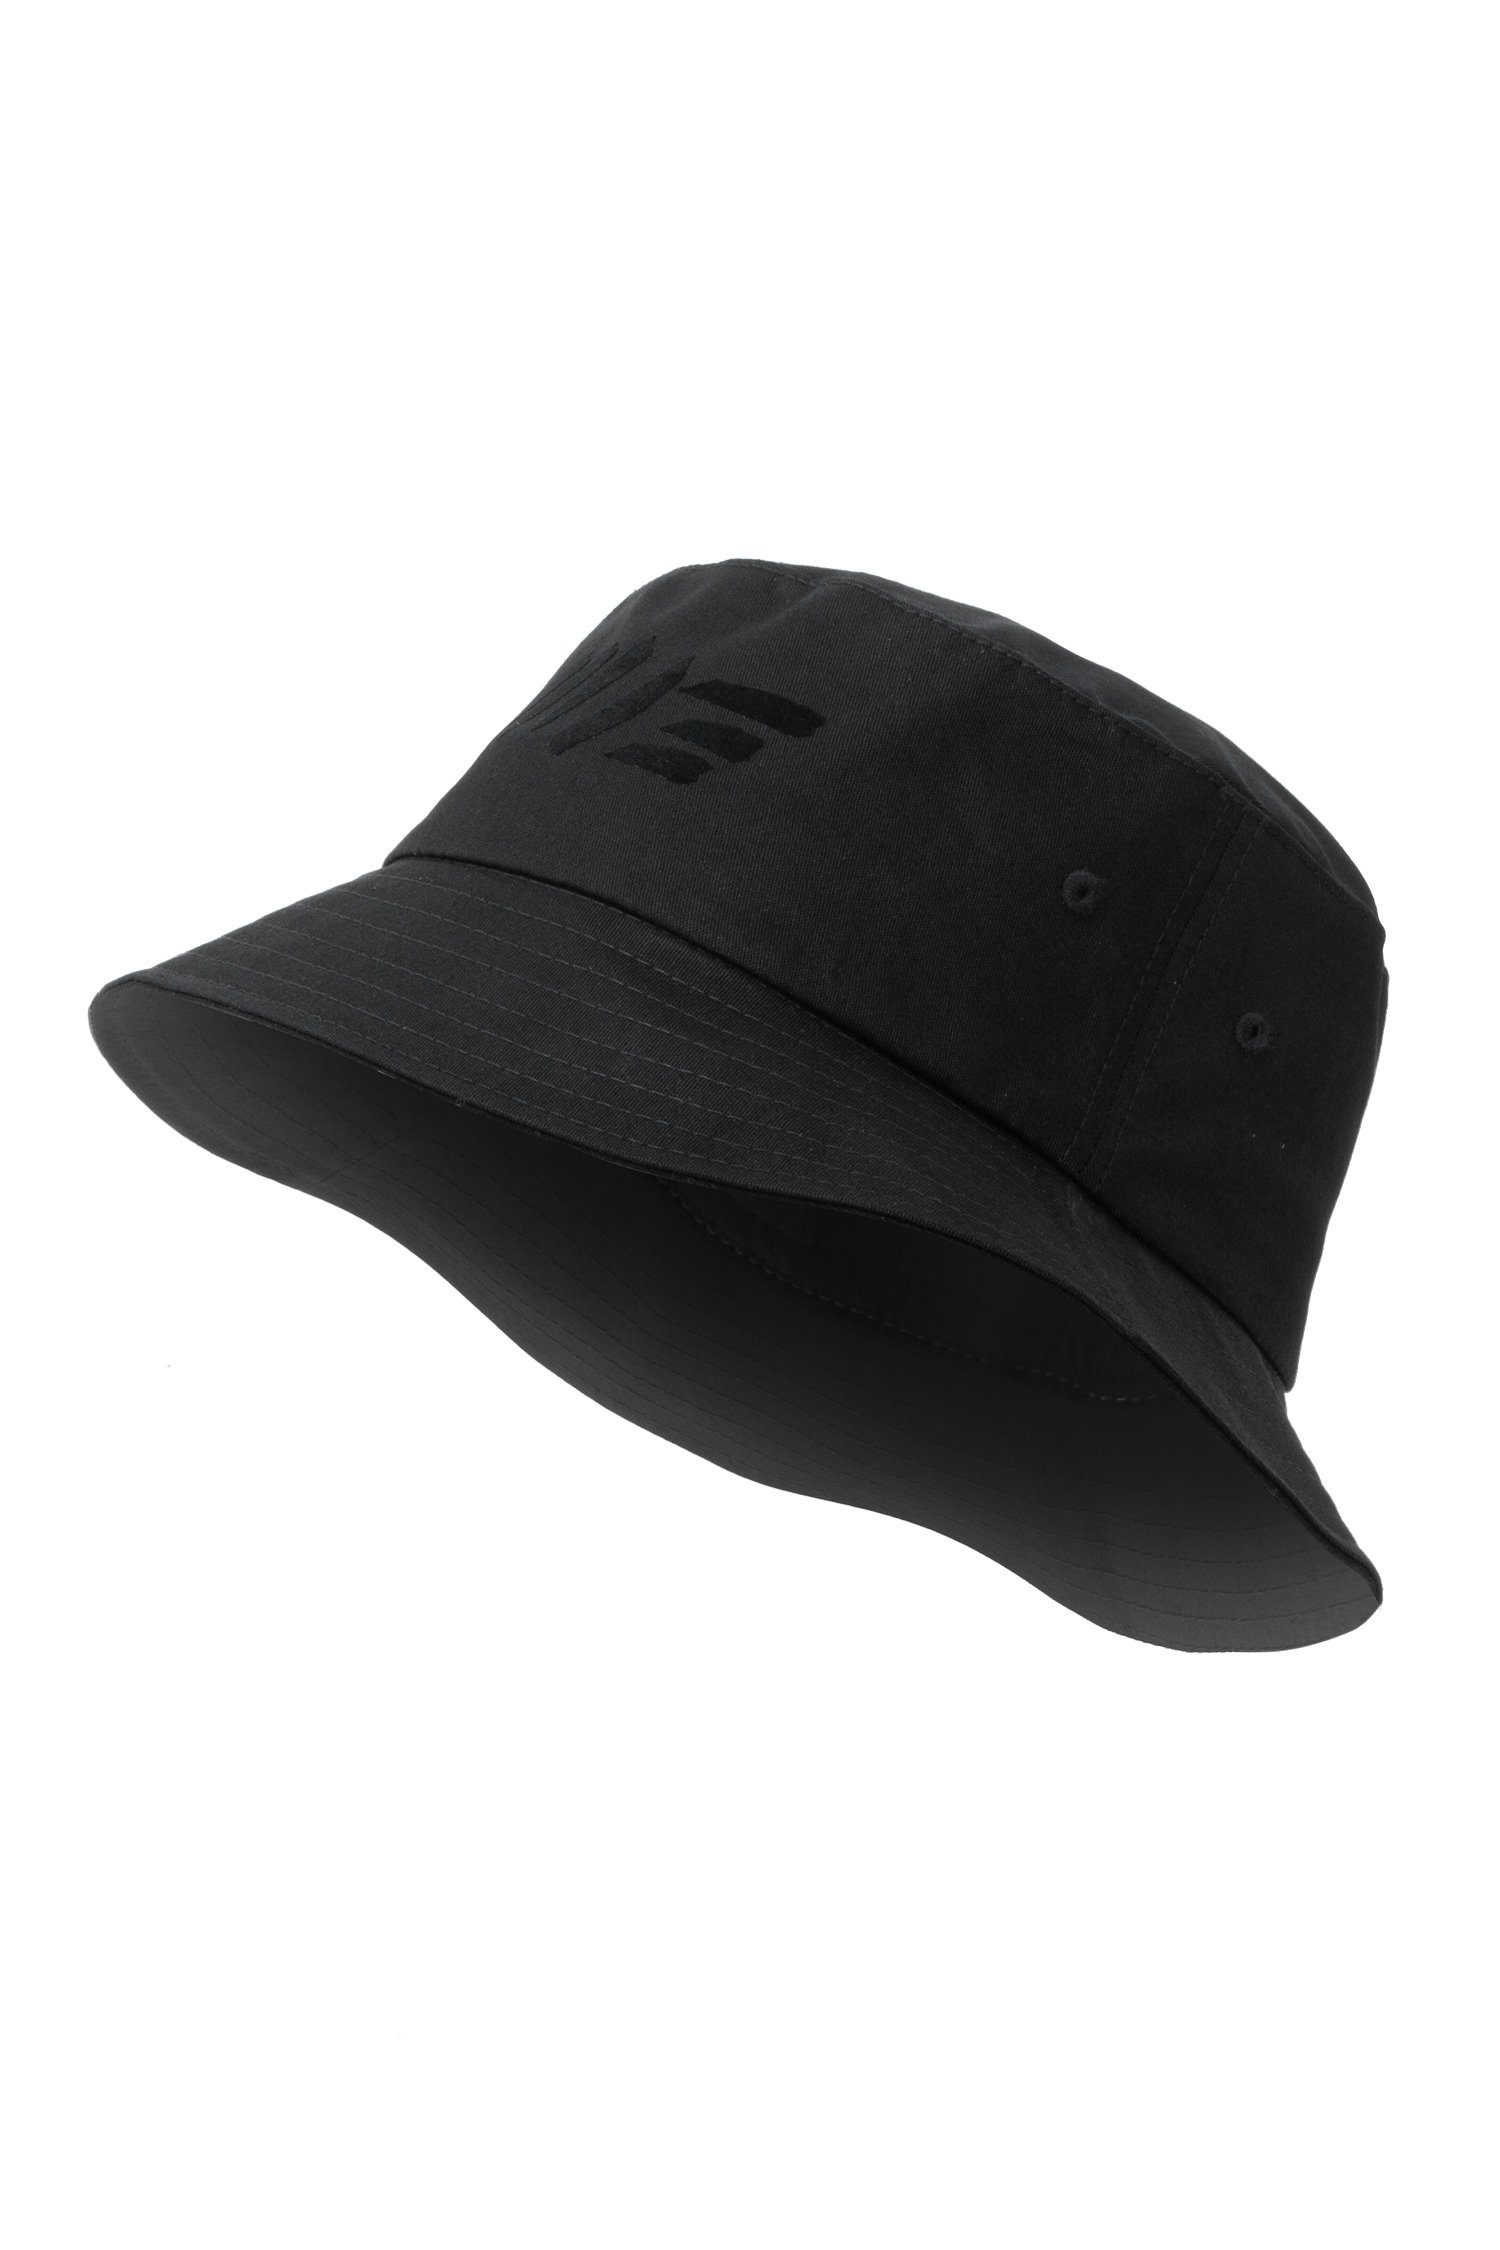 Manufaktur13 Fischerhut M13 Bucket Hat Hat, Out - Vegan Session Anglerhut, 100% Black Fischermütze